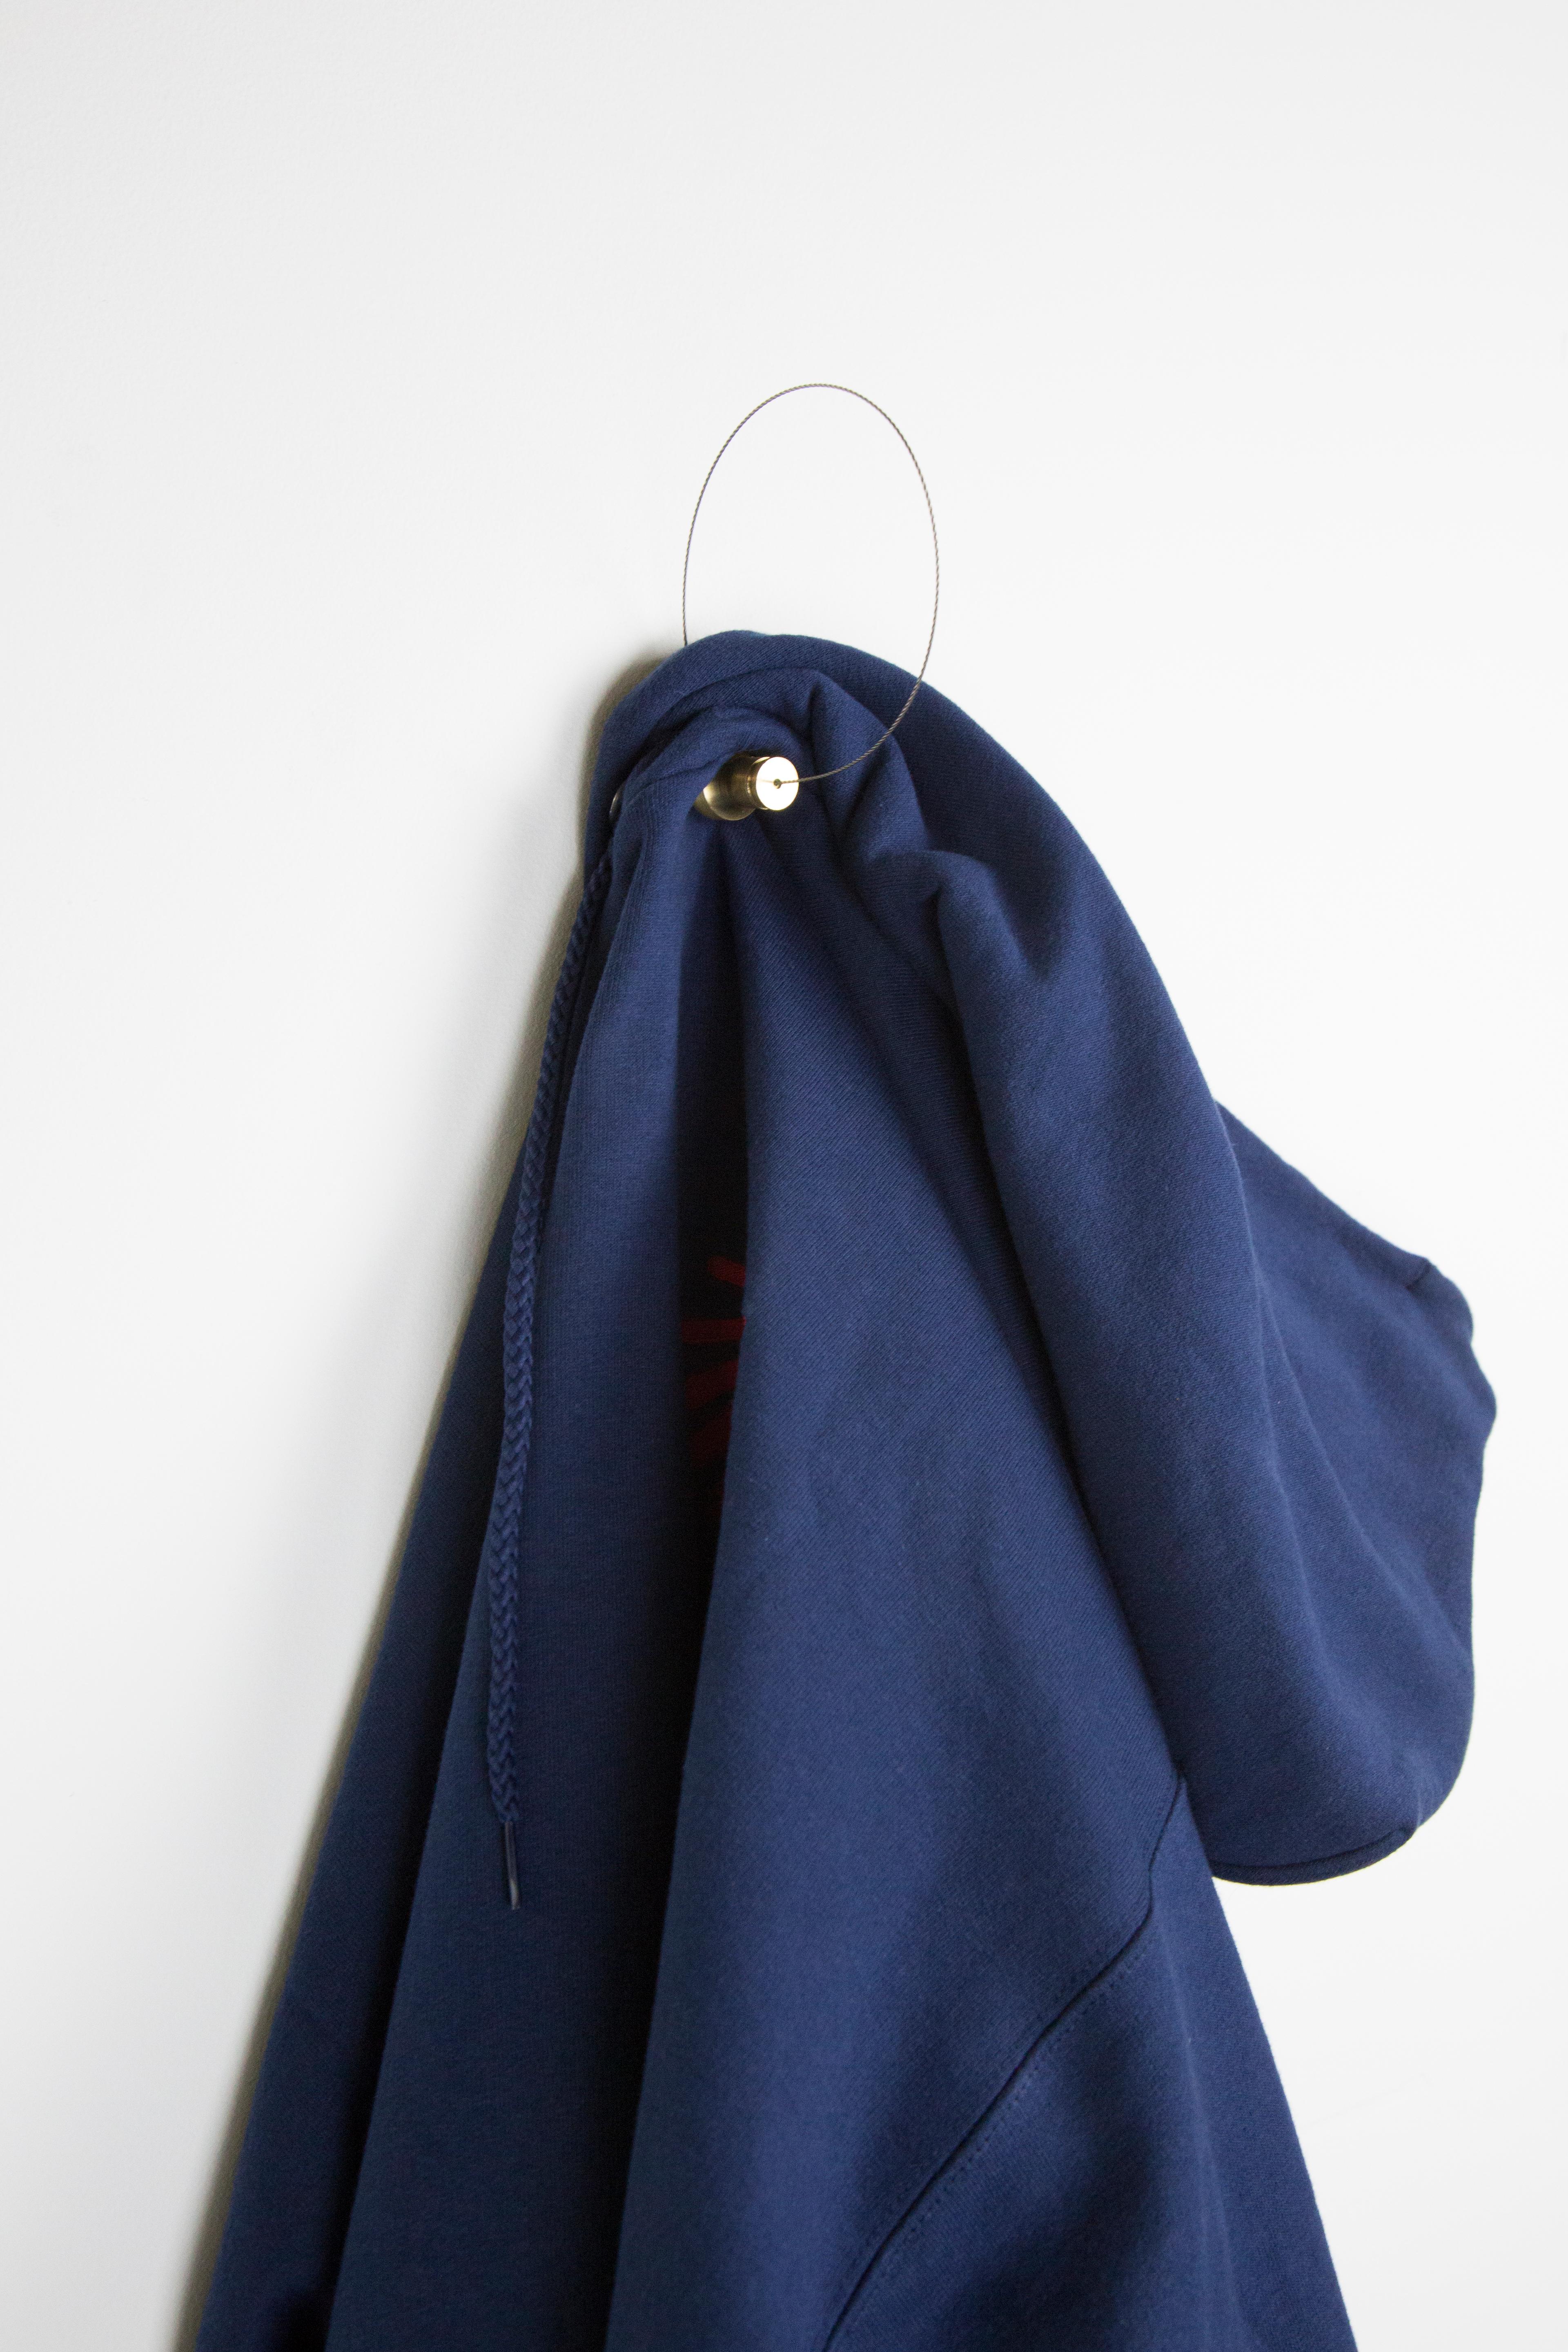 Post-Modern Set of 3 Coat Hooks by Gentner Design For Sale